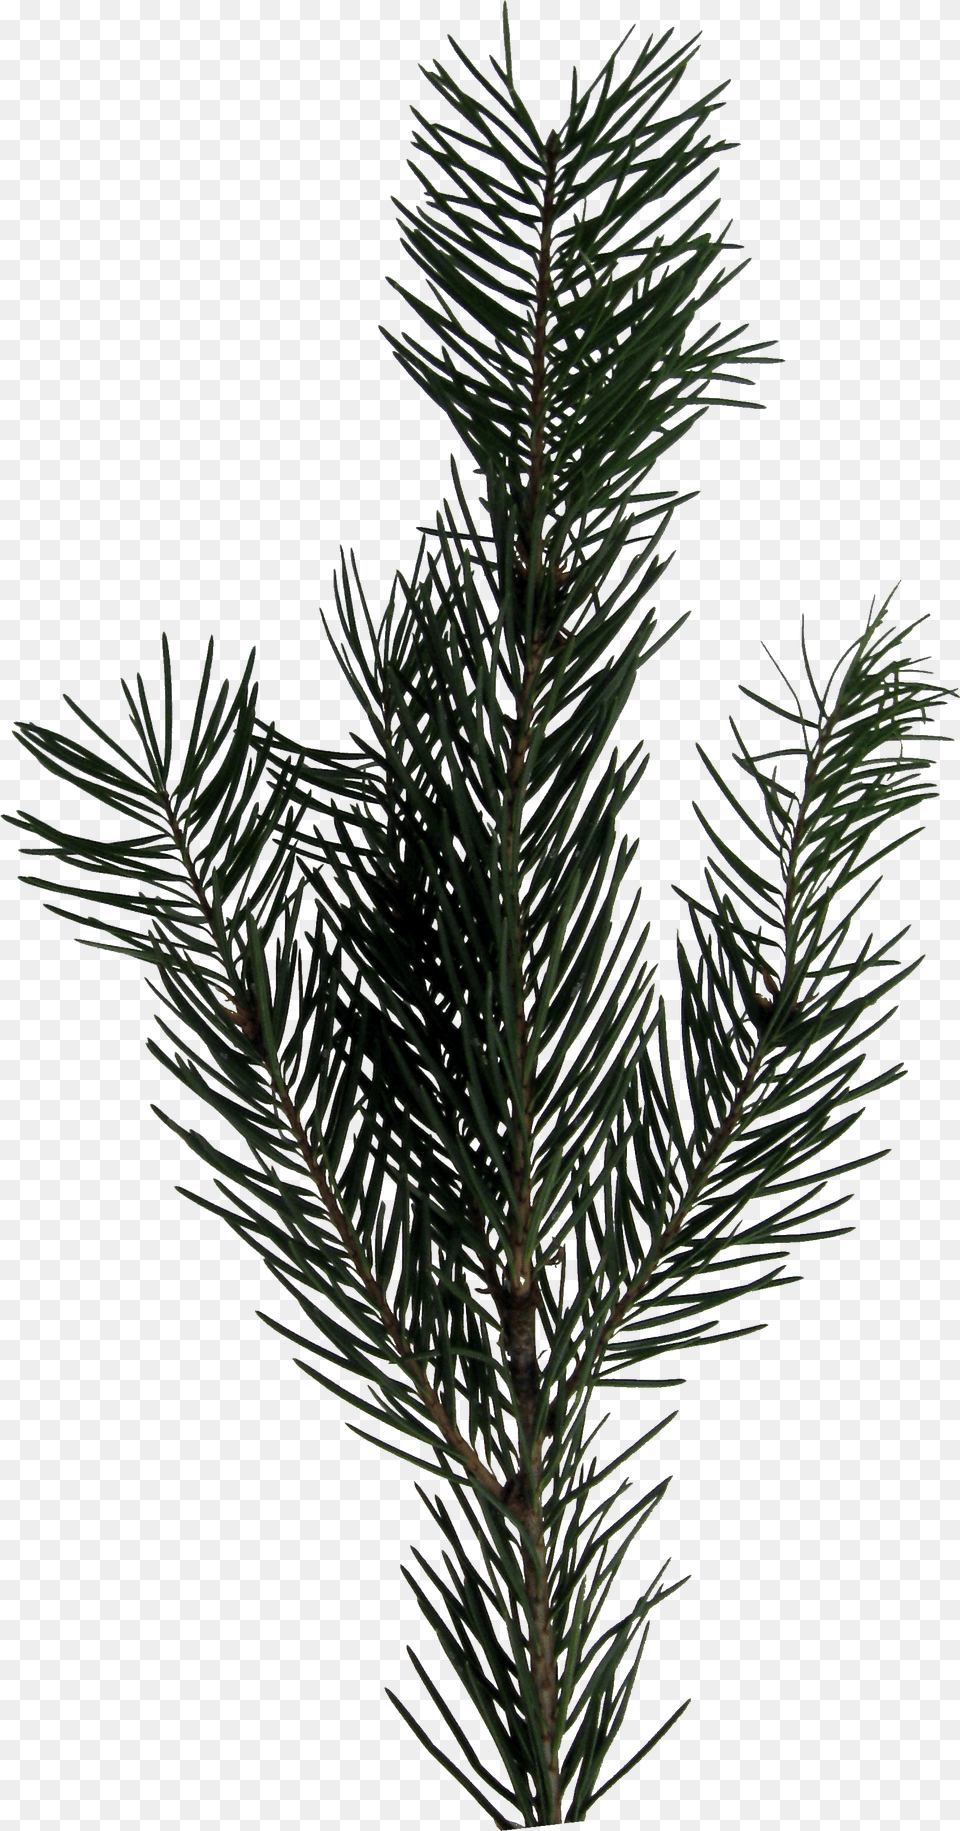 Download Evergreen Sprig Sprig, Conifer, Fir, Pine, Plant Png Image